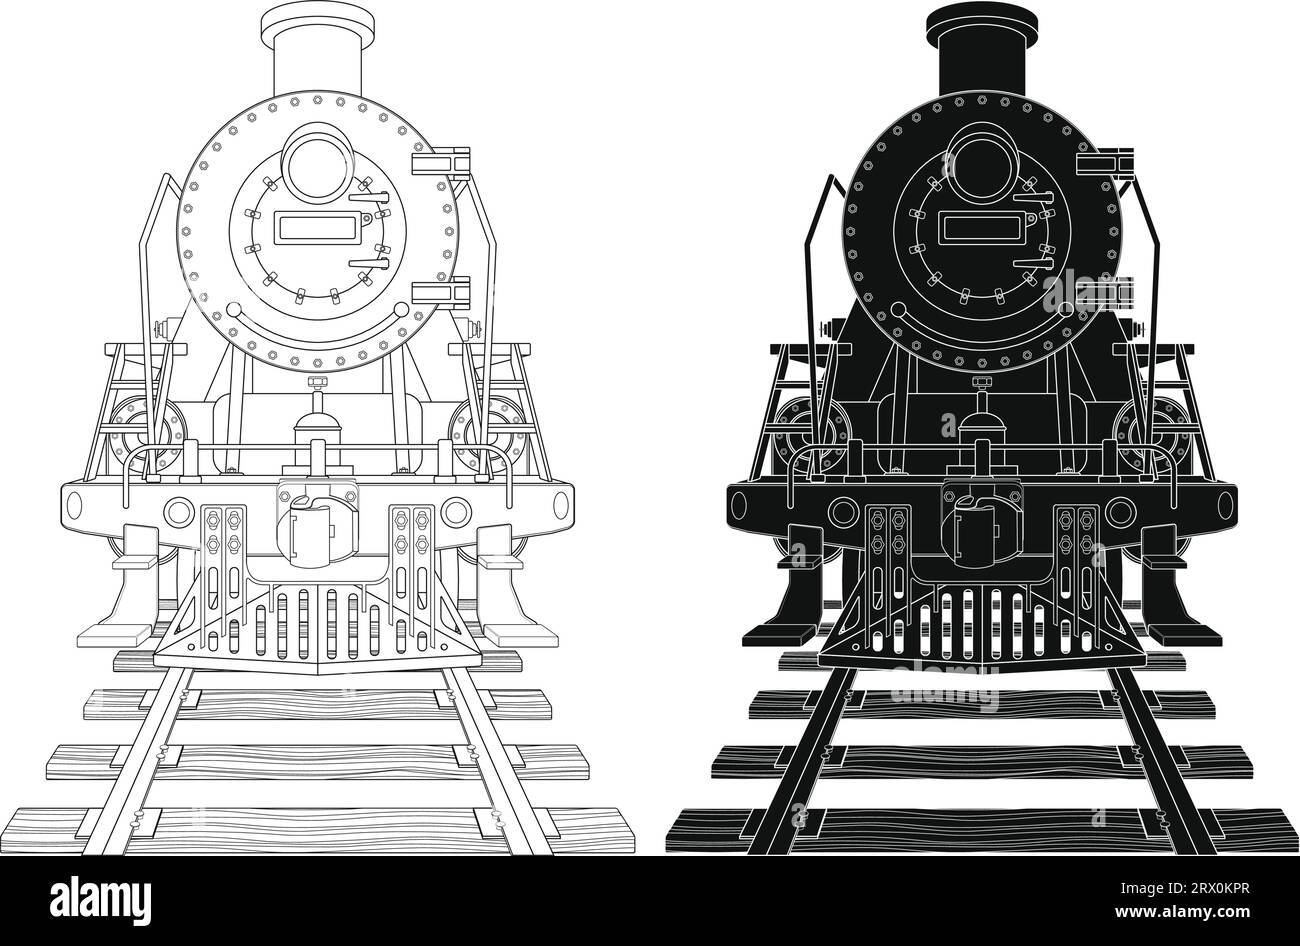 Geschichtete editierbare Vektorillustration Silhouette der altmodischen Dampflokomotive. Stock Vektor